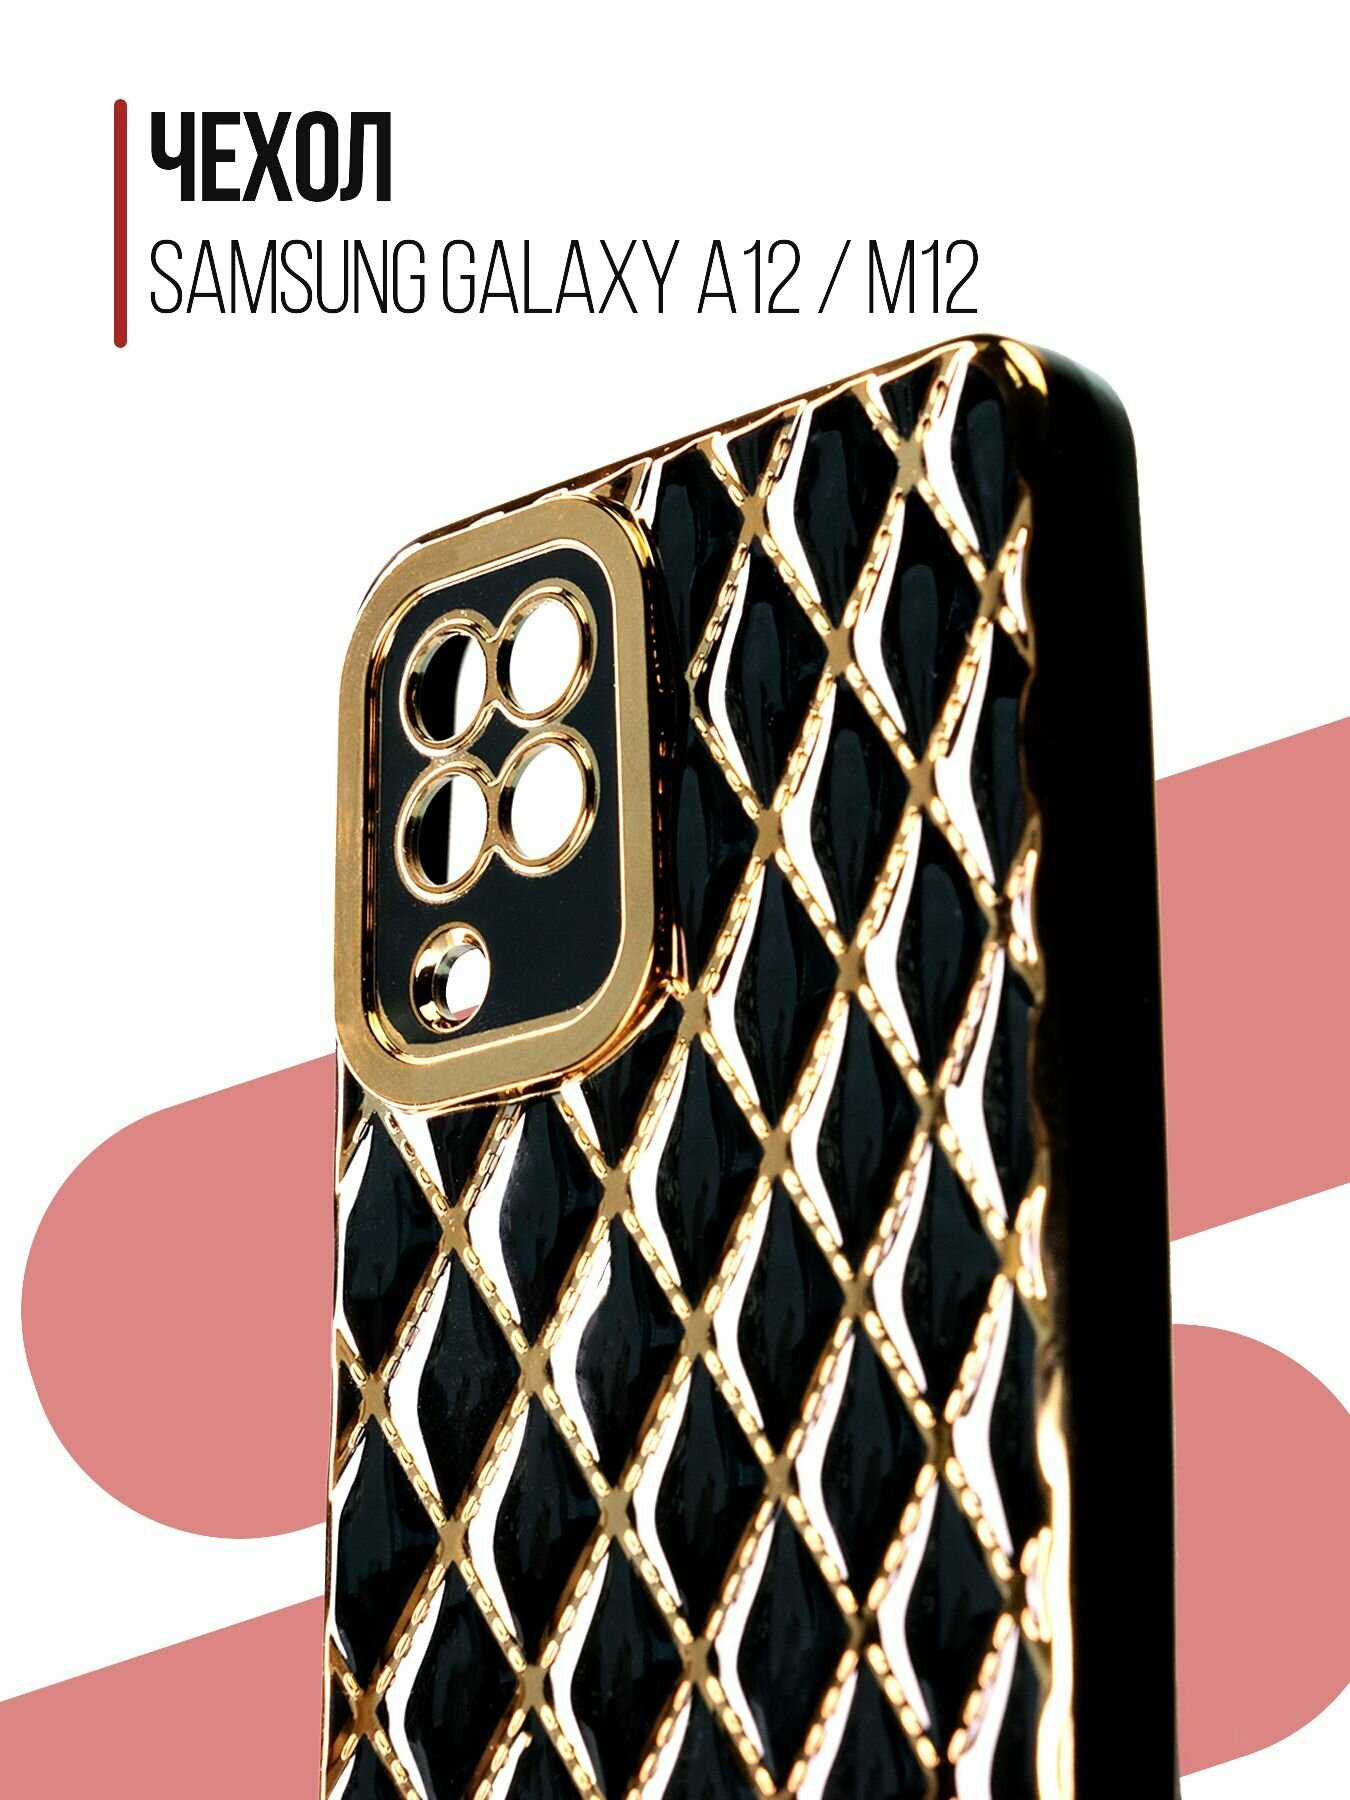 Чехол на Samsung Galaxy A12 / M12 силиконовый противоударный защитный бампер для Самсунг а12 / М12 с золотой рамкой Черный